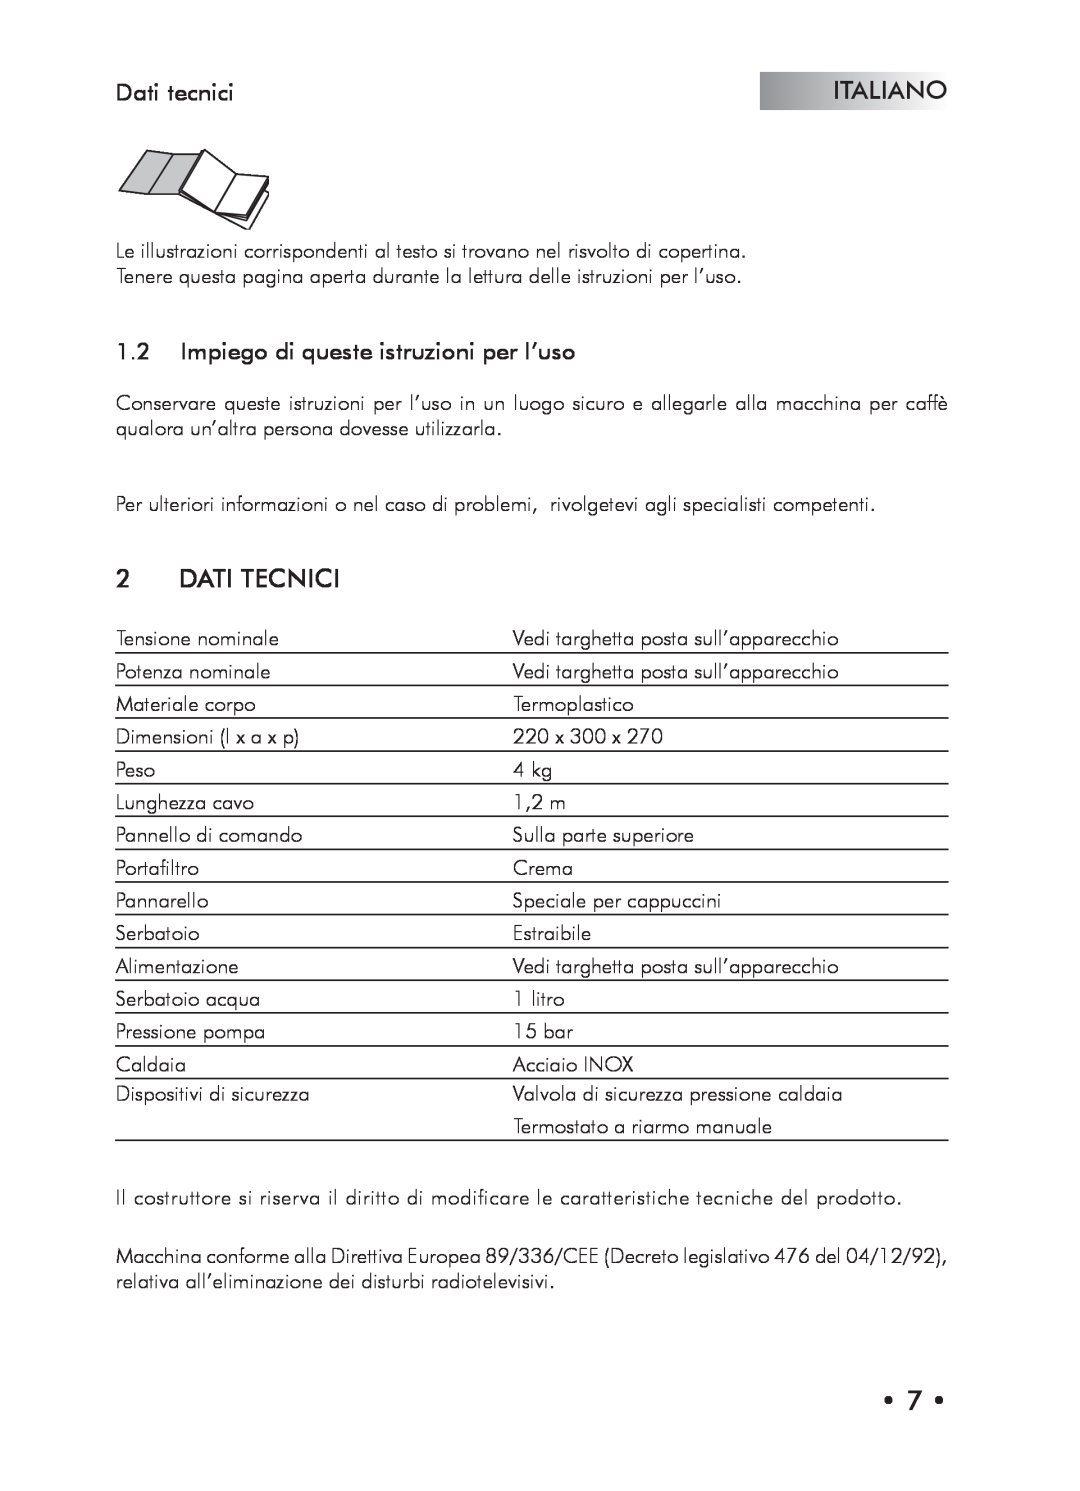 Saeco Coffee Makers Type SIN024X manual Dati Tecnici, Dati tecnici, Impiego di queste istruzioni per l’uso, Italiano 